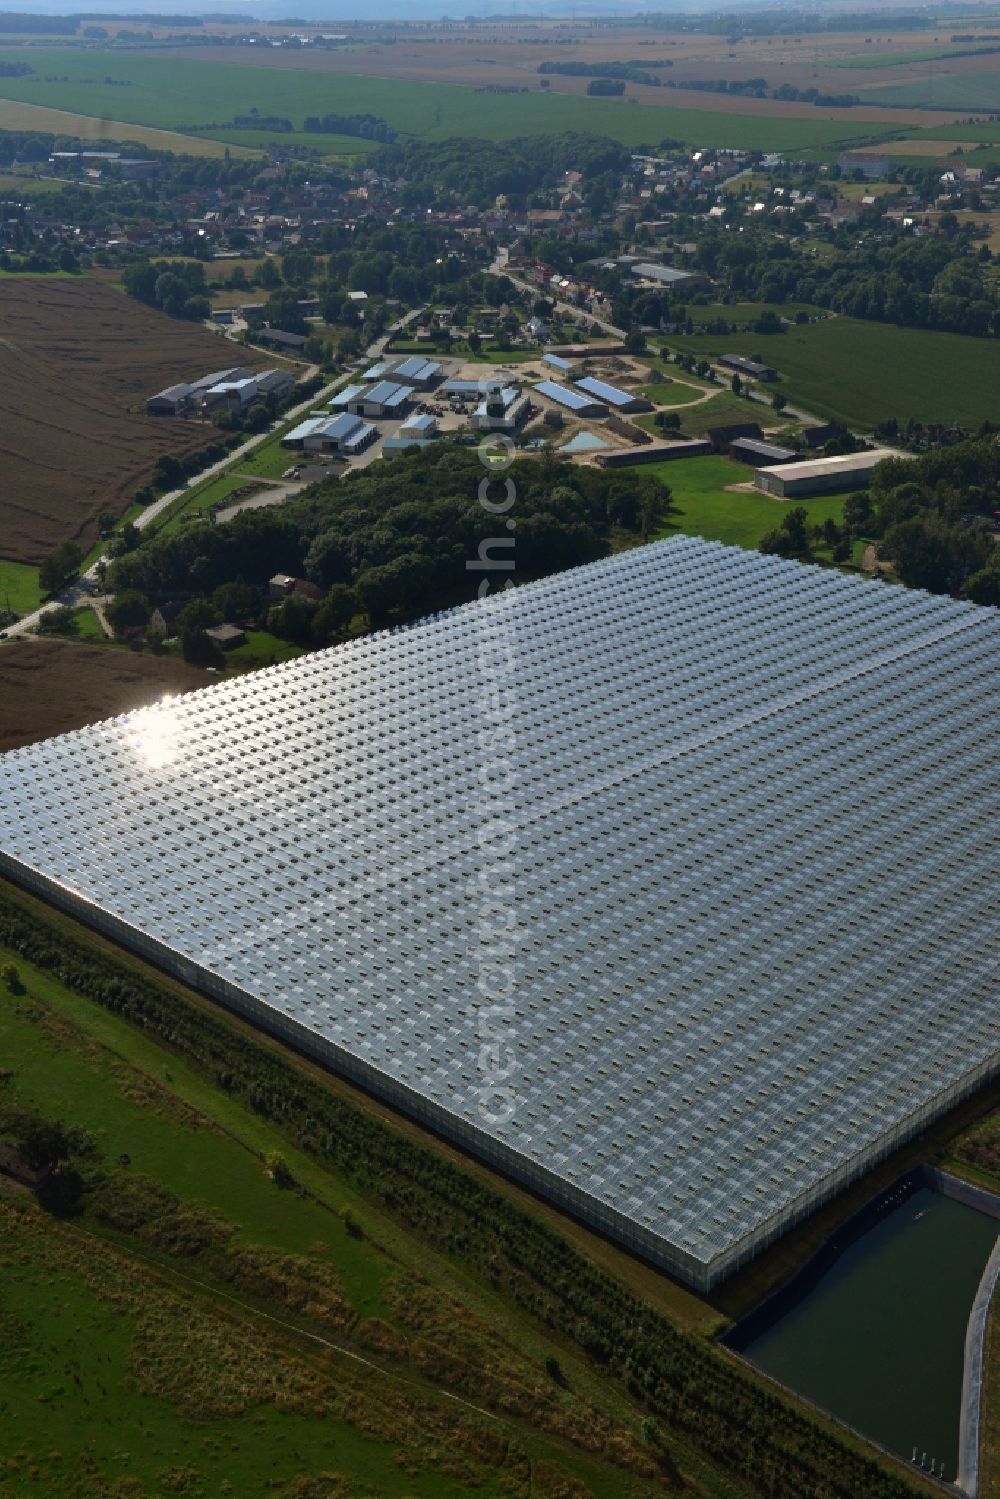 Aerial image Schkölen - Greenhouse plant for tomato production in Schkölen in Thuringia